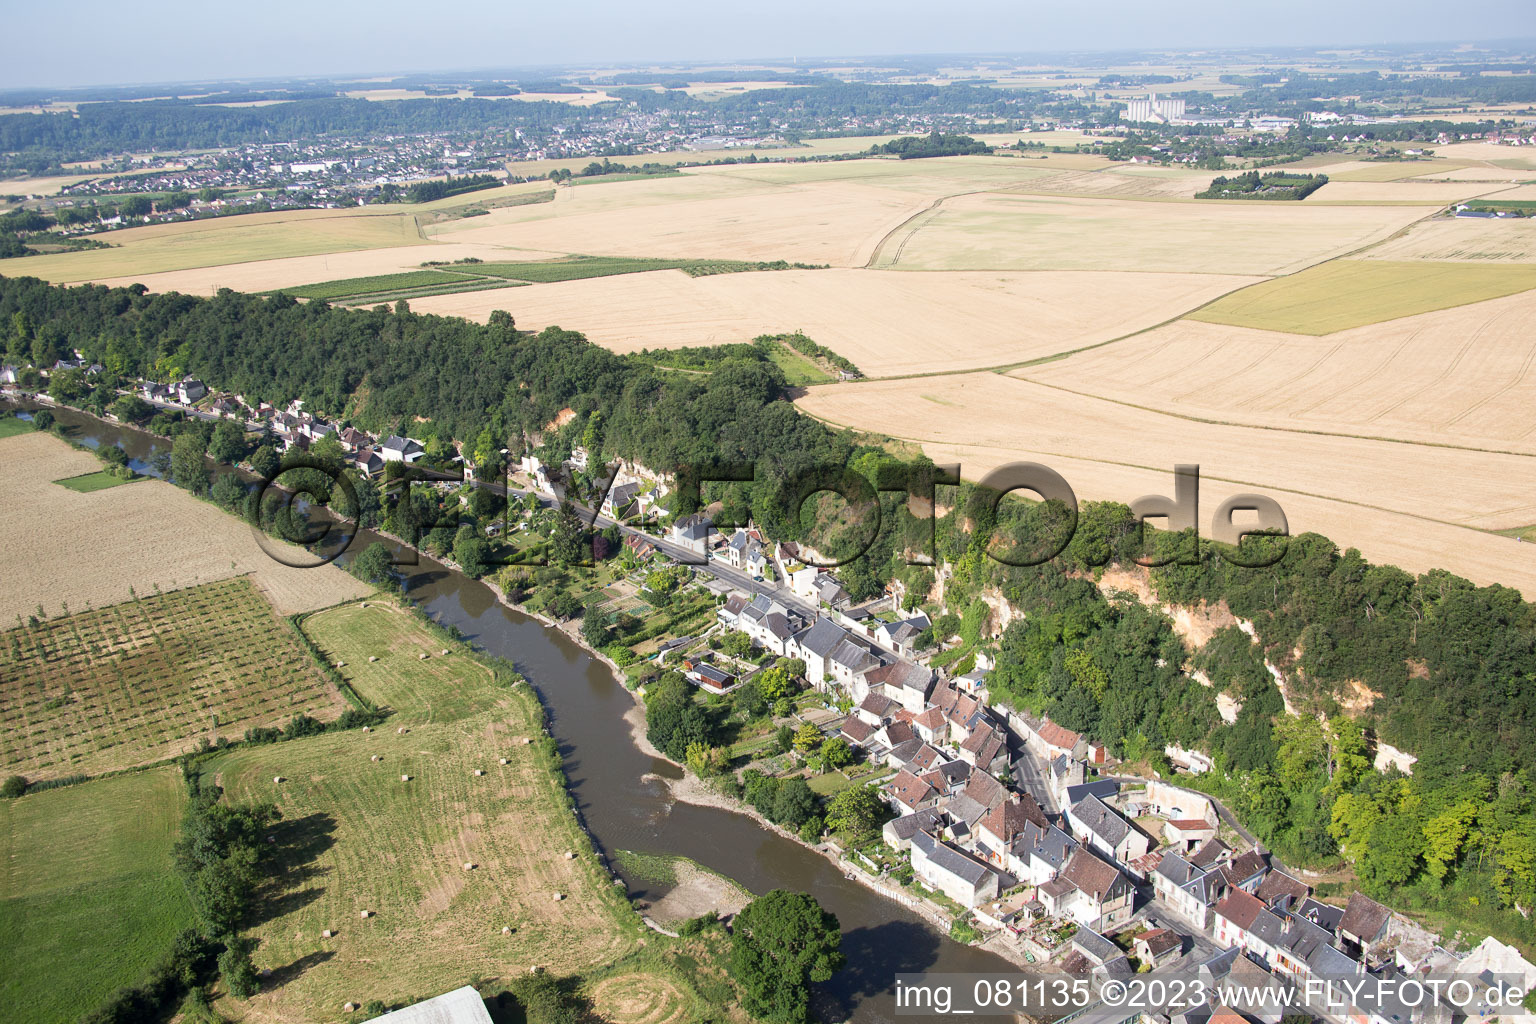 Saint-Rimay im Bundesland Loir-et-Cher, Frankreich von oben gesehen